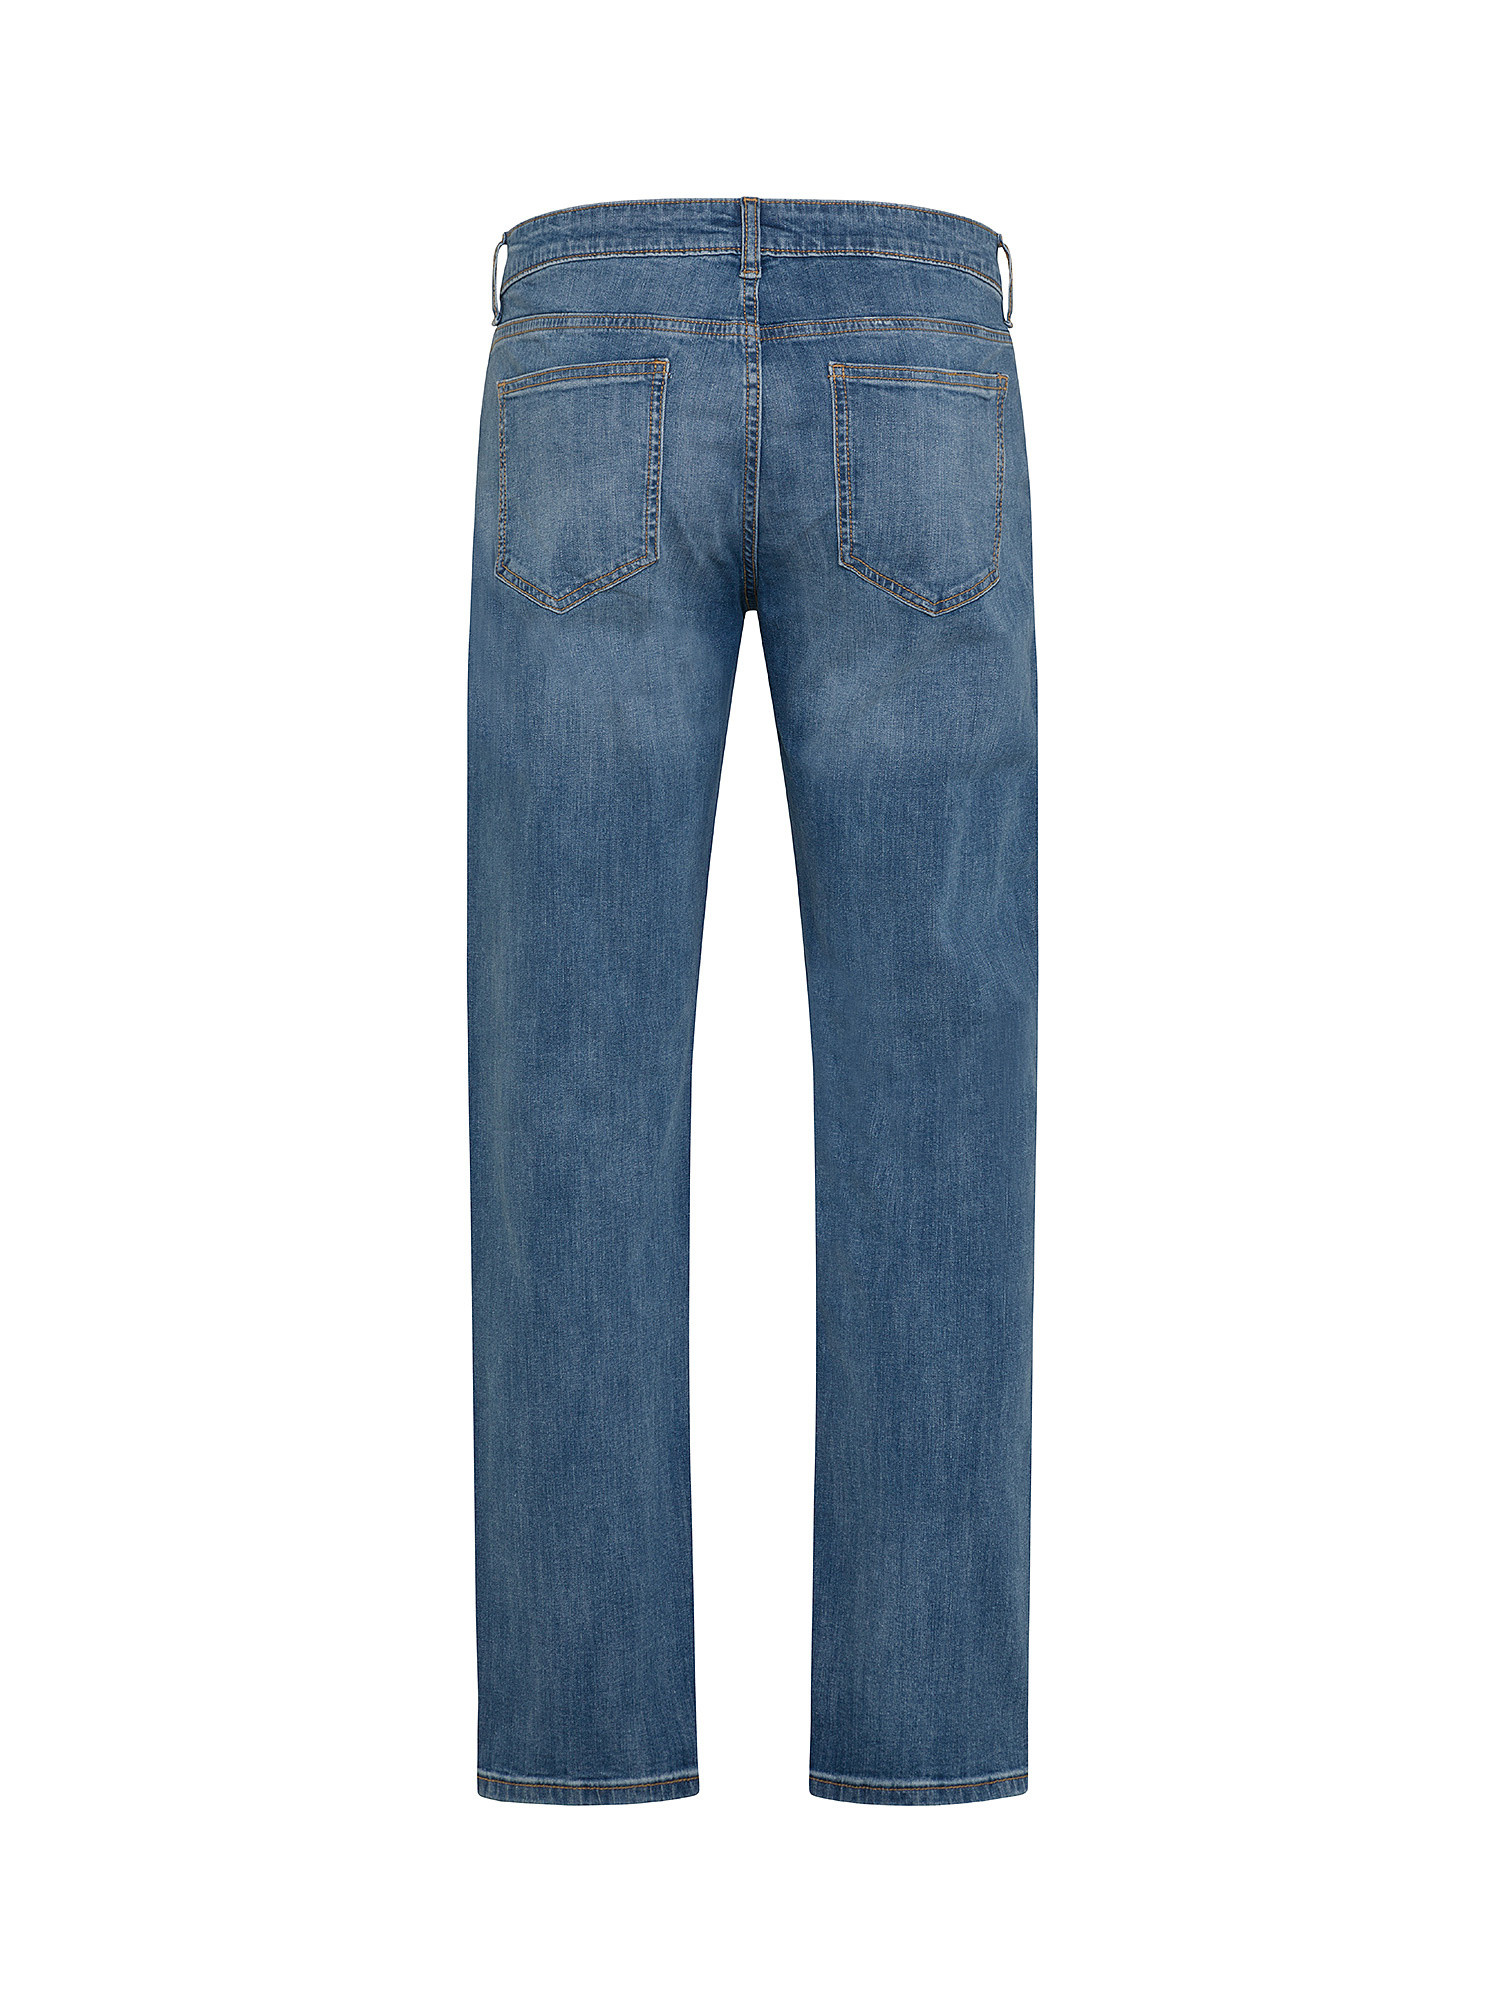 JCT - Five pocket jeans, Dark Blue, large image number 1